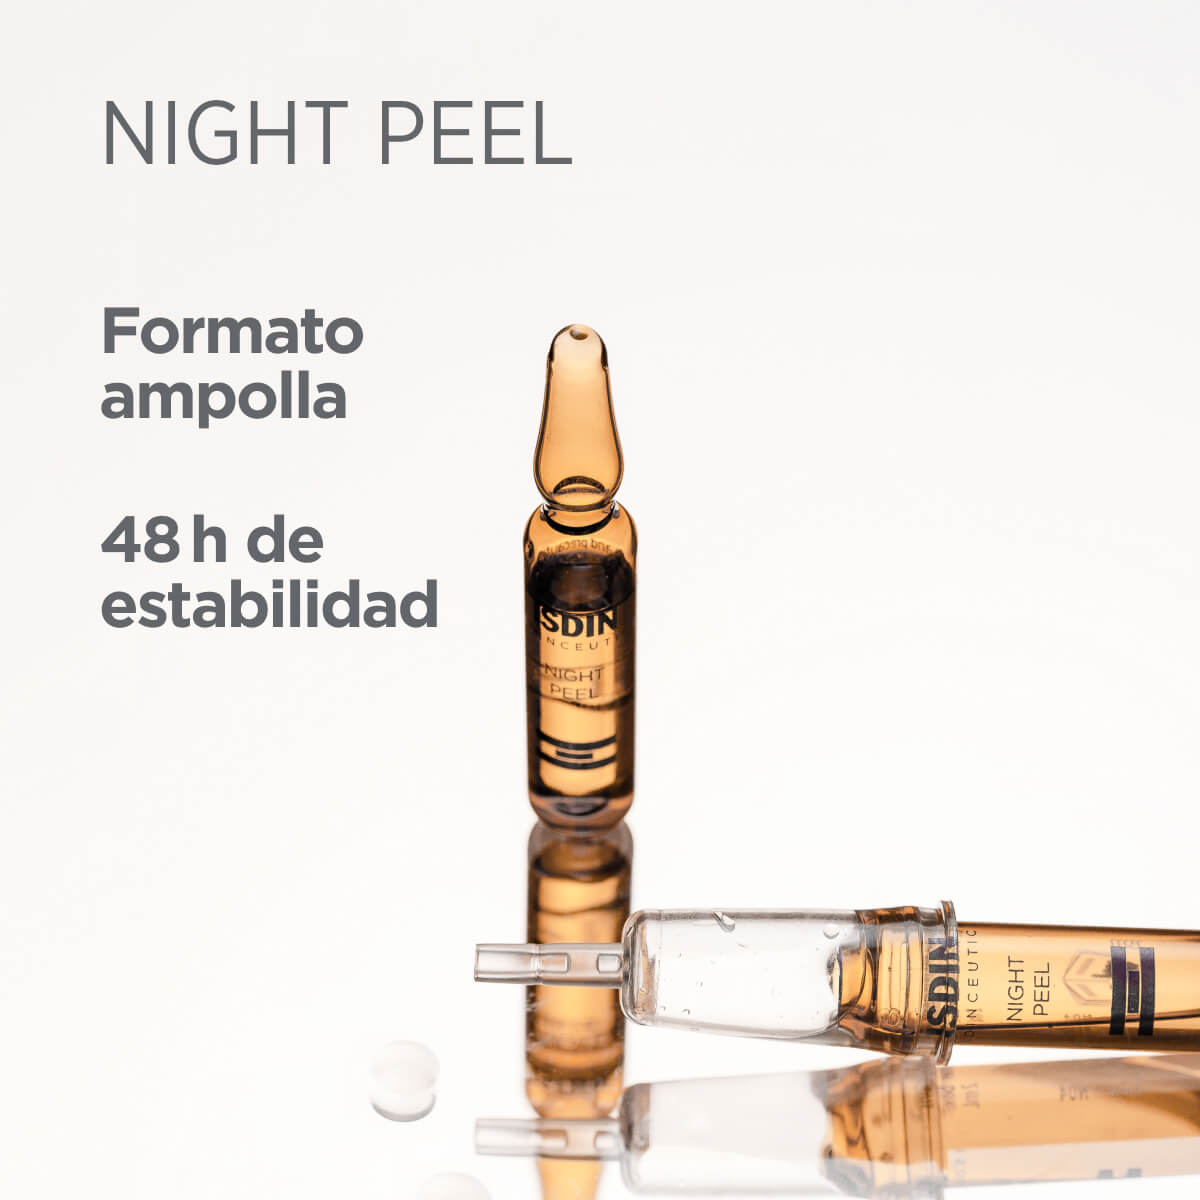 Ampollas Isdinceutics Night Peel – 30x2ml | ISDIN